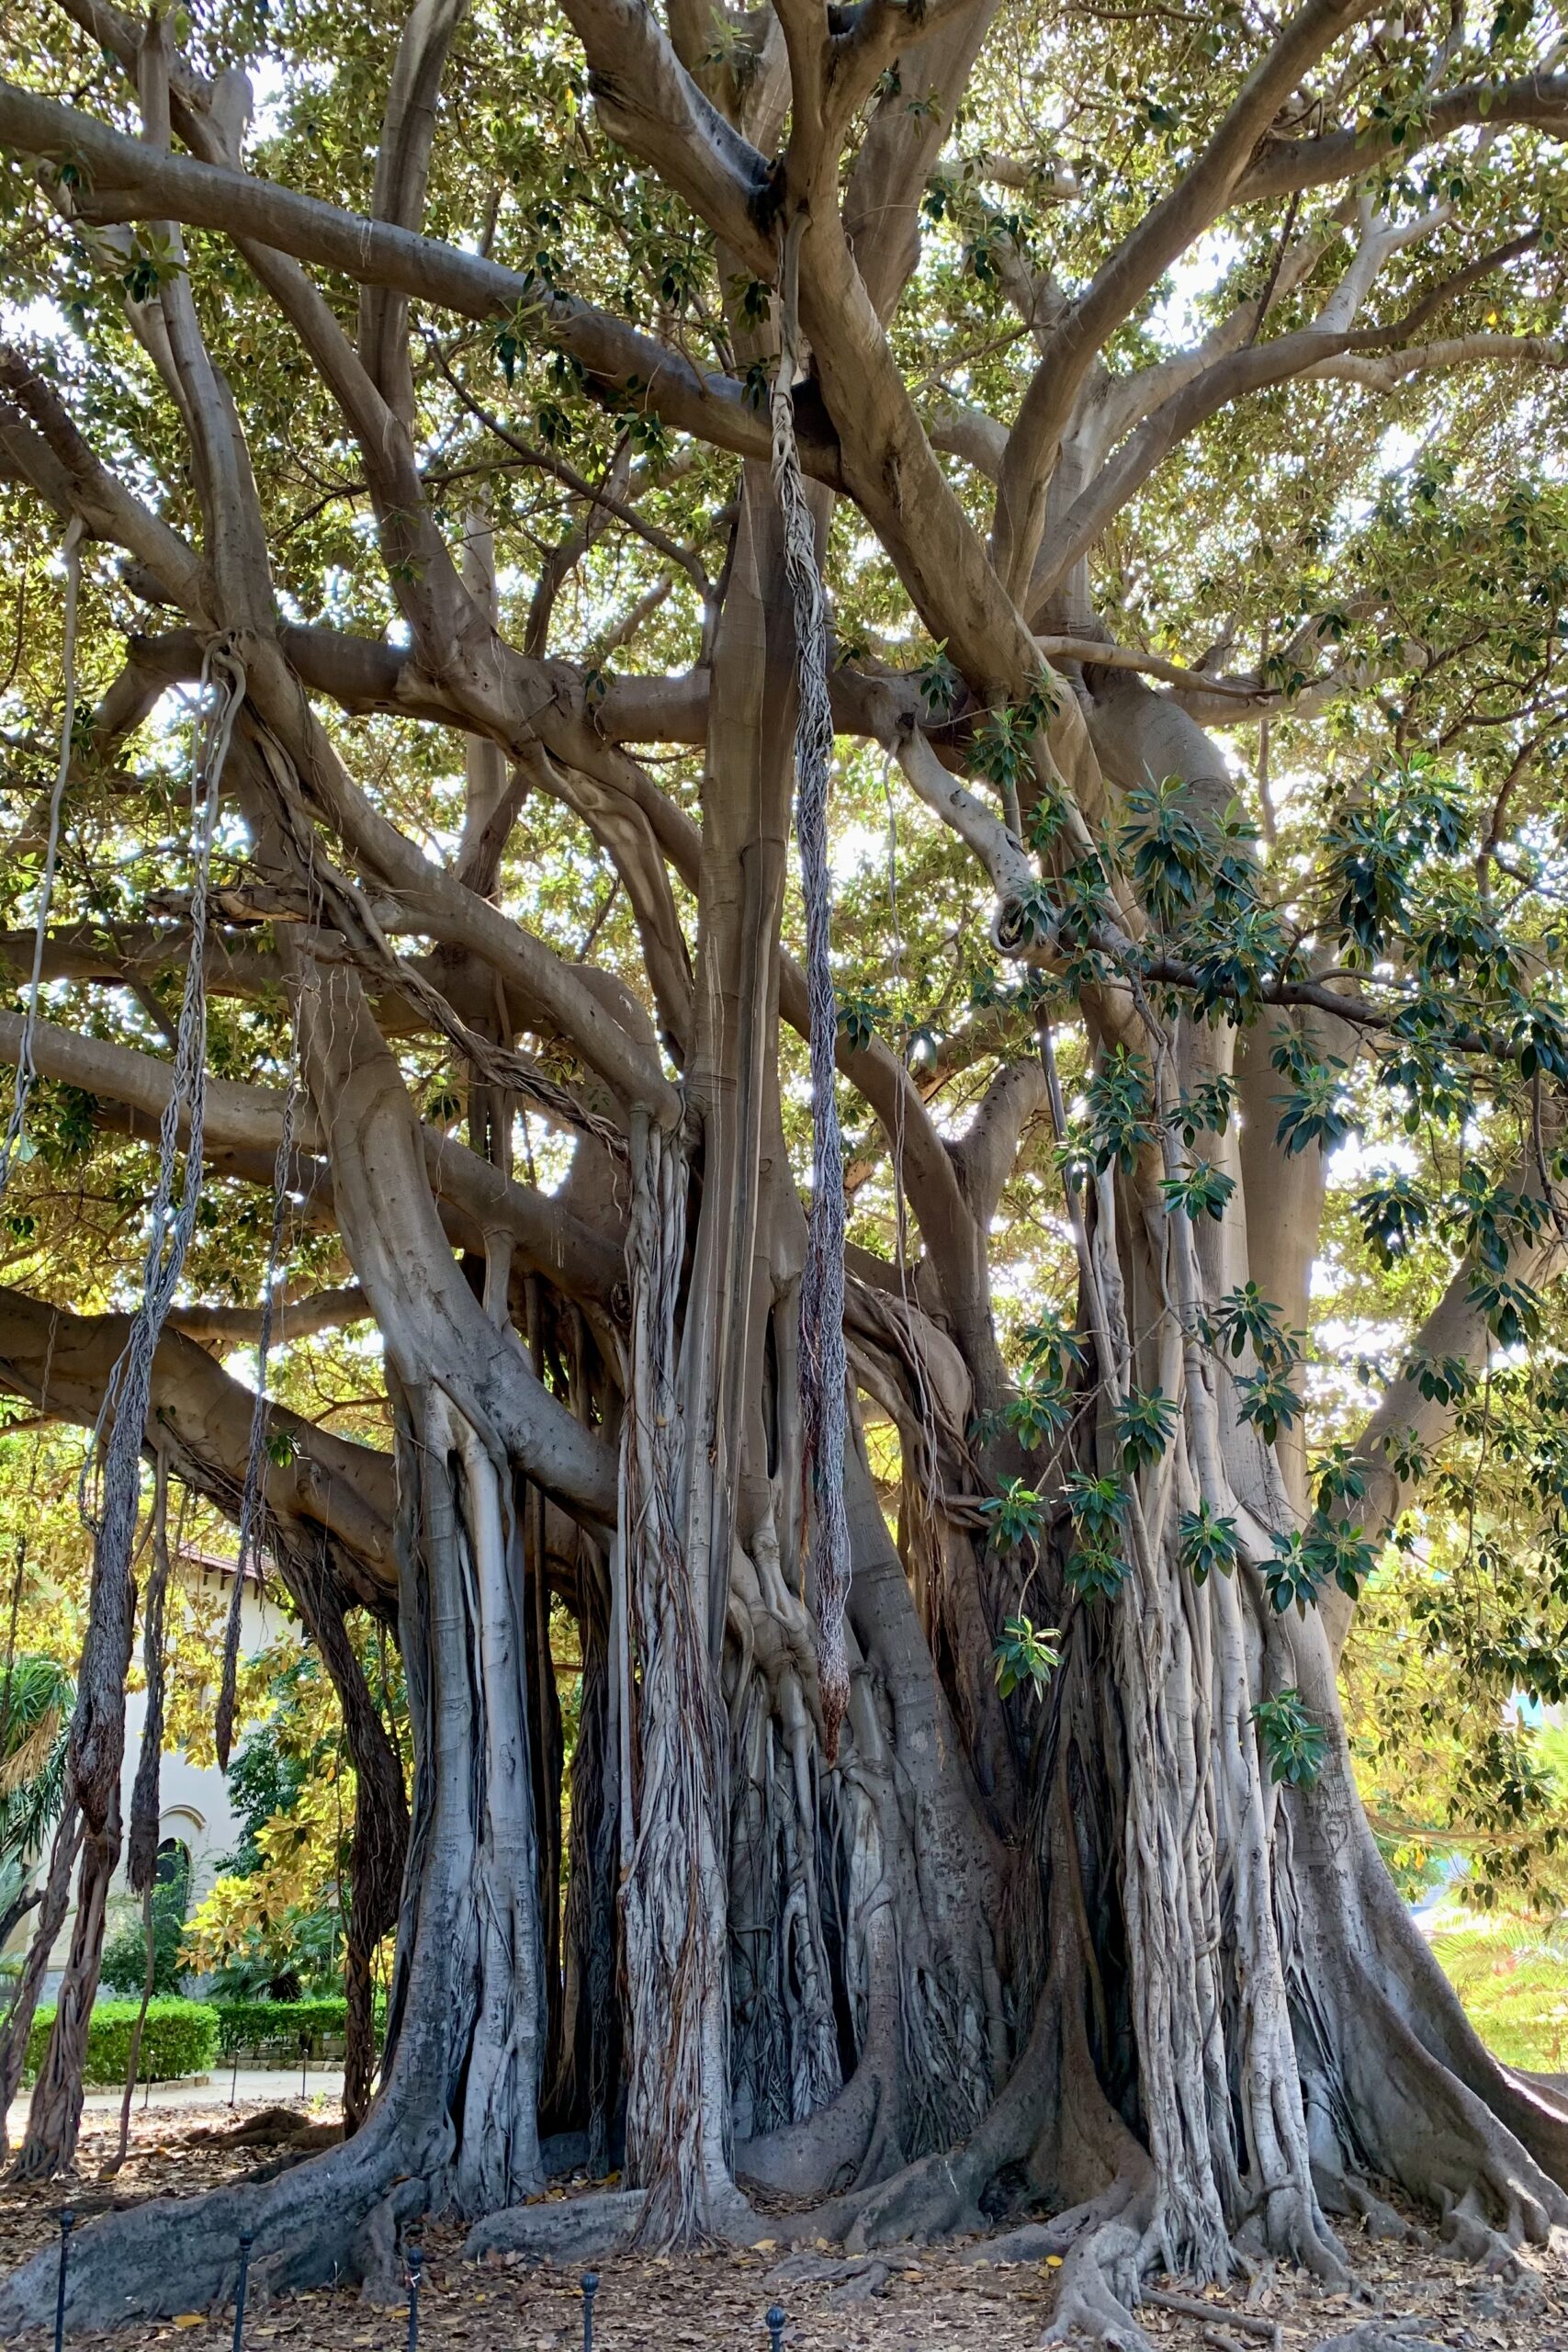 Giardino Garibaldi in Palermo heeft bizarre ficusbomen